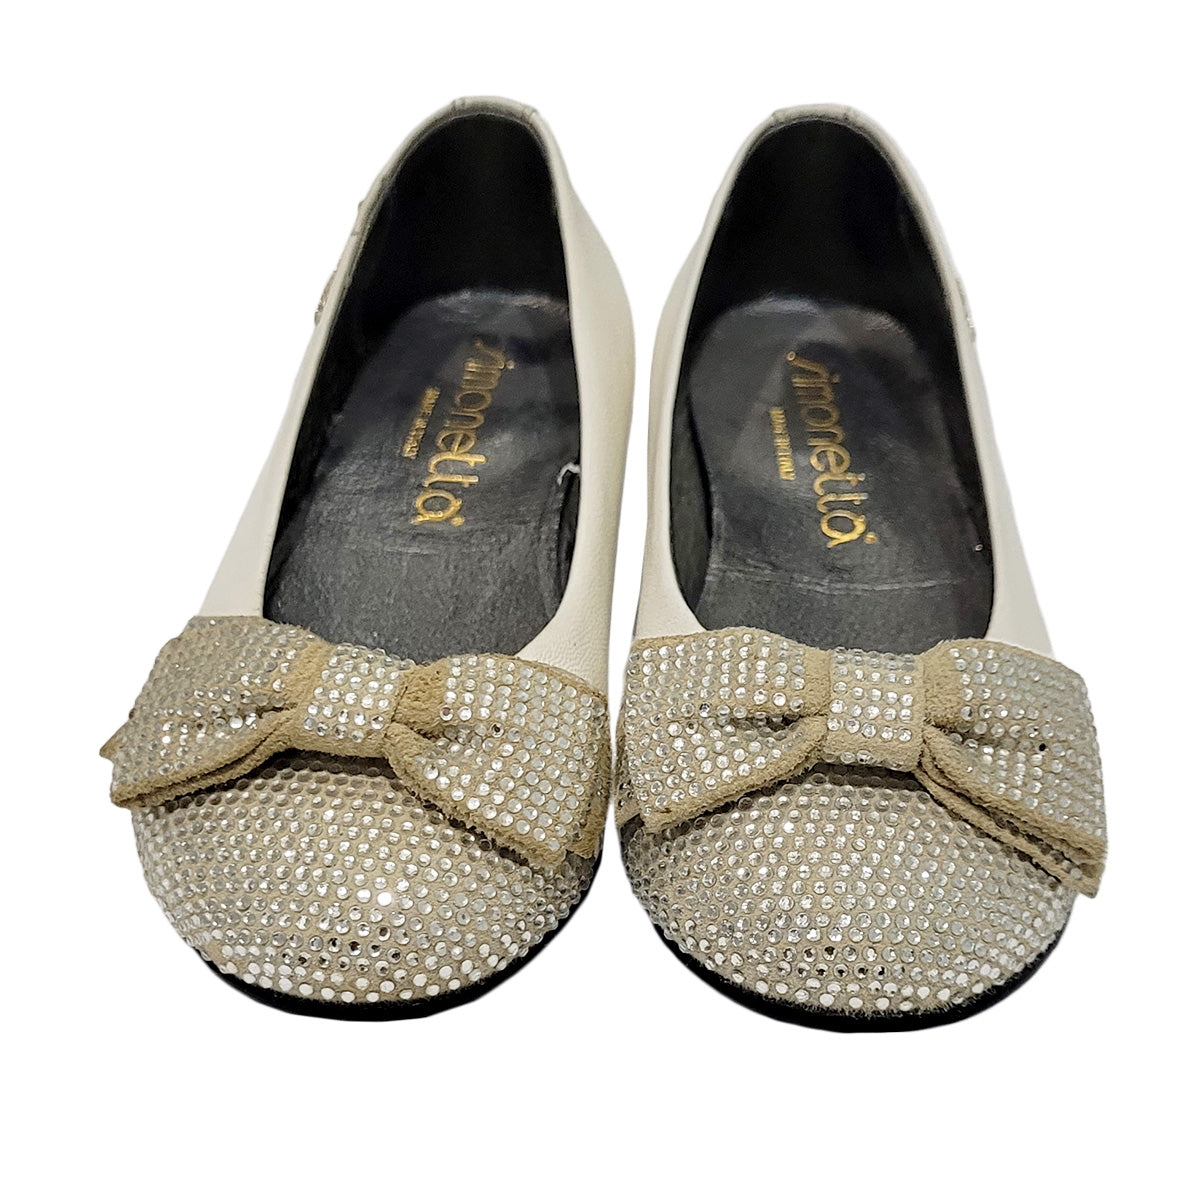 Simonetta cream-colored shoe